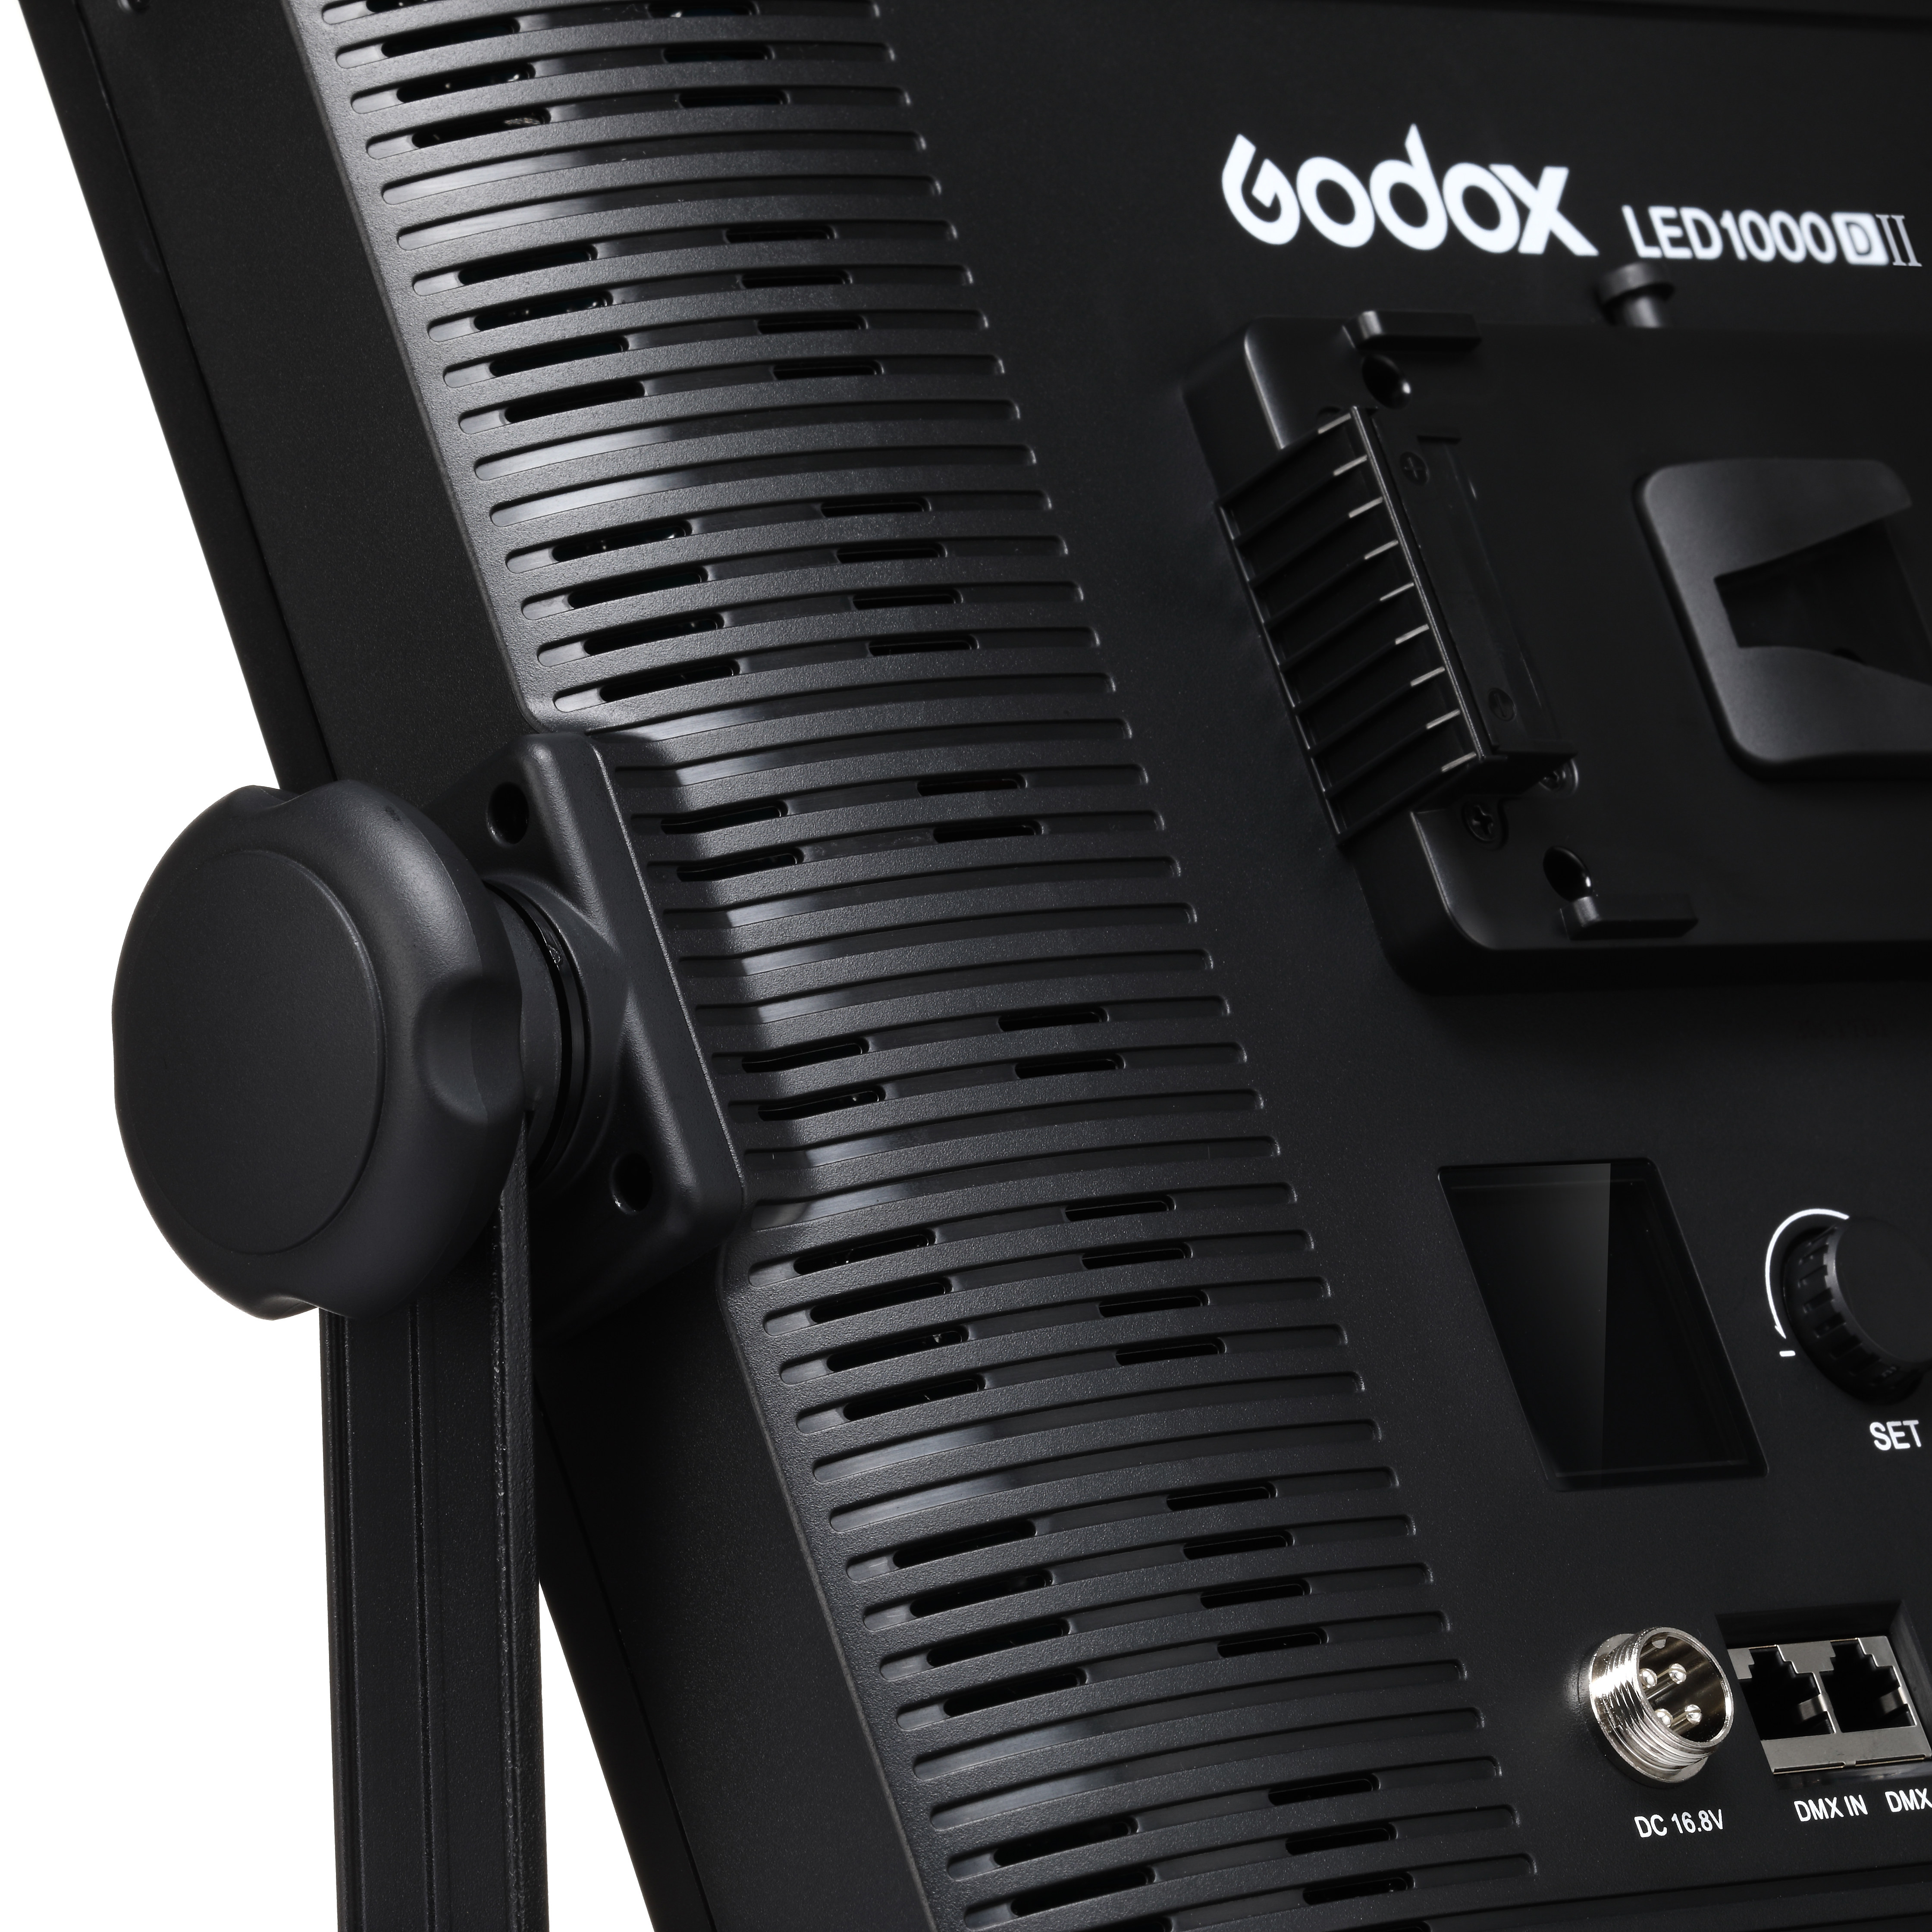    Godox LED1000D II    Ultra-mart